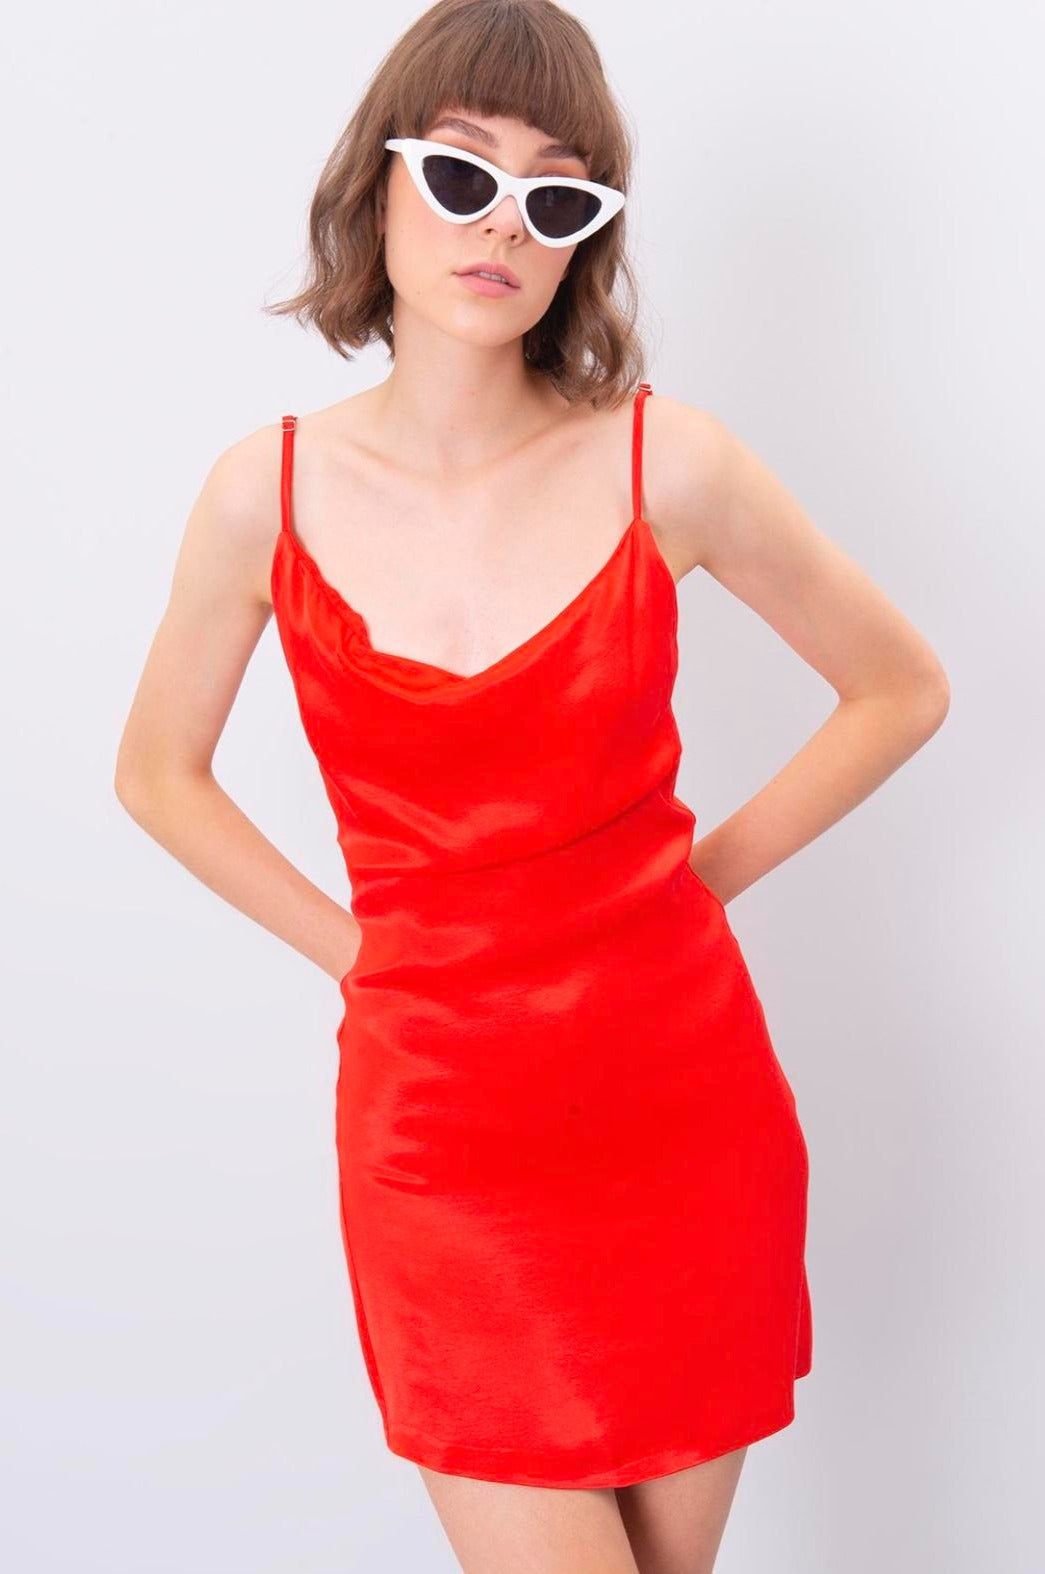 Дамска рокля FIESTA  https://bvseductive.com/products/дамска-рокля-fiesta  100 % вискоза рокля от сатен в мини дължина и червен цвят висококачествена изработка от мека материя идеален избор за младежка и свежа визия предложение, с което ще направиш впечатление